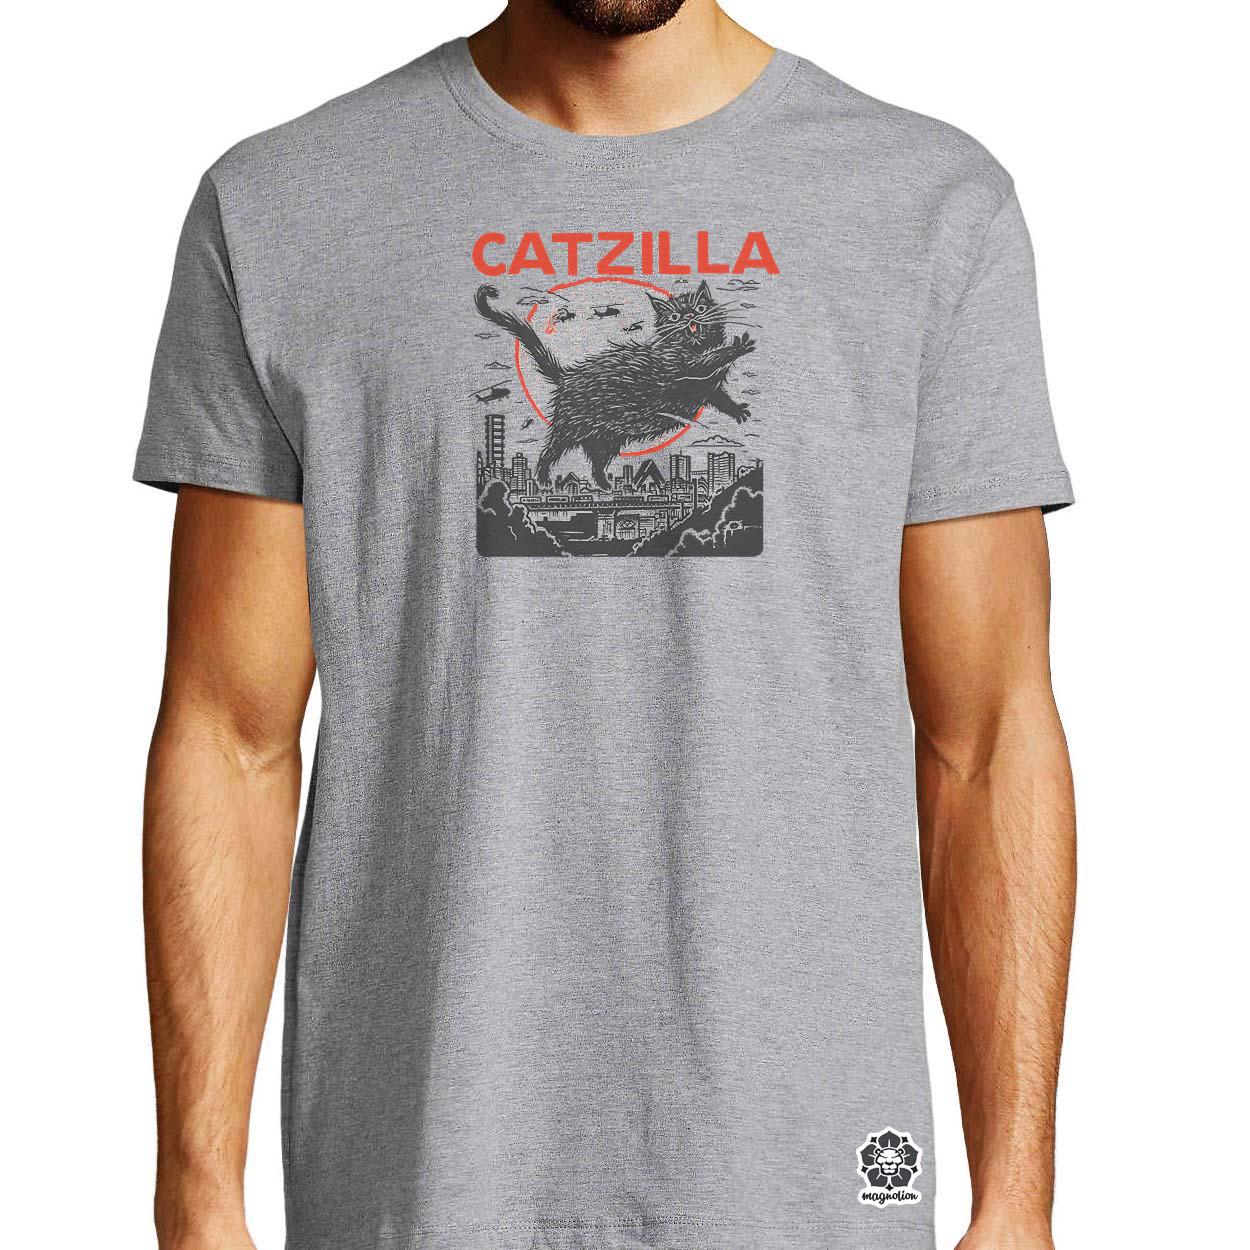 Catzilla v1